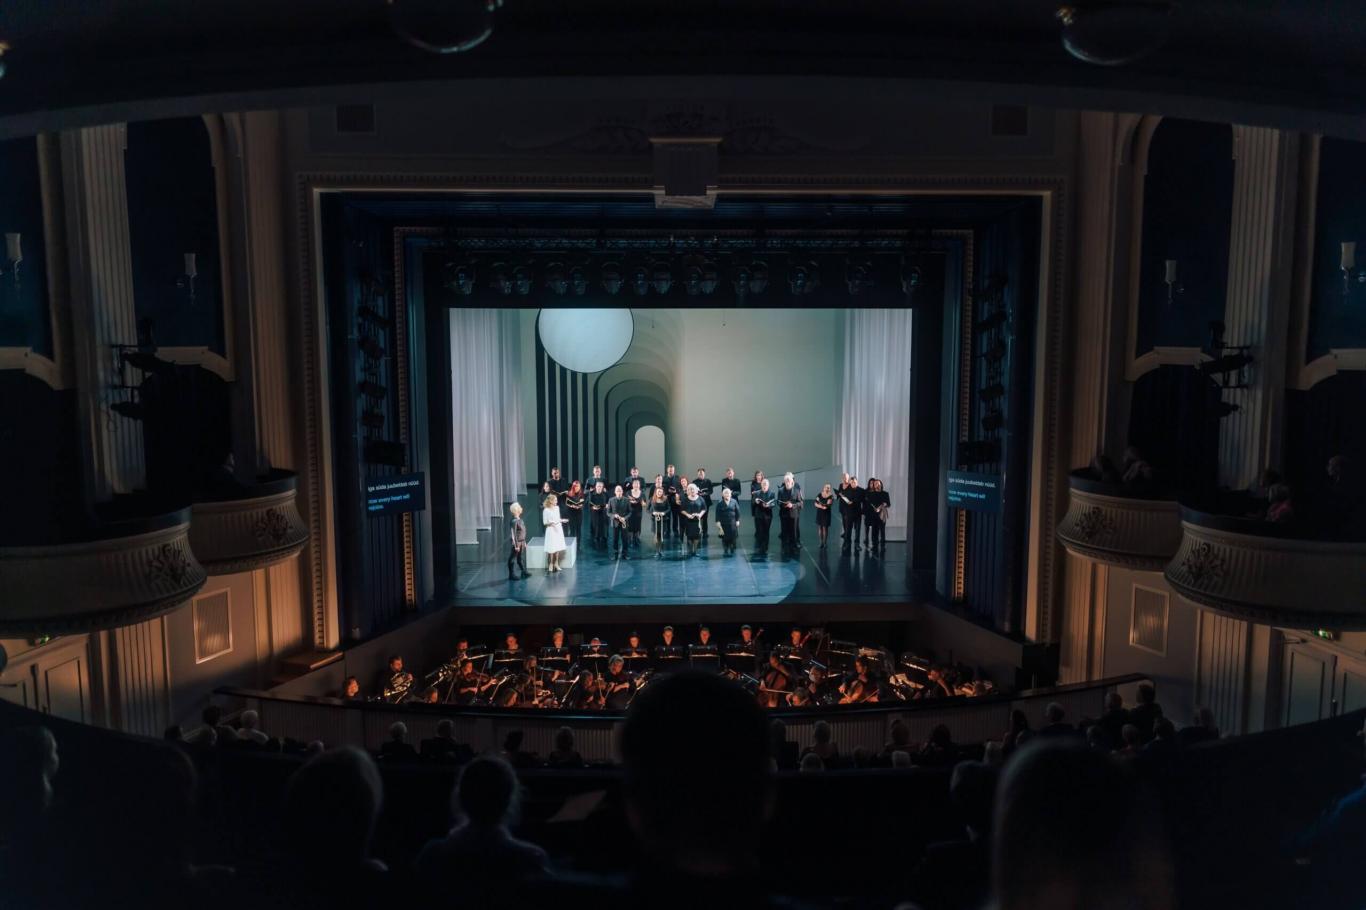 Üheksandal Vana Tallinn Galal esitas Rahvusooper Estonia kontsertlavastuse „Idomeneo“, mis põhineb Wolfgang Amadeus Mozarti esimesel suurel, harva esitataval oo